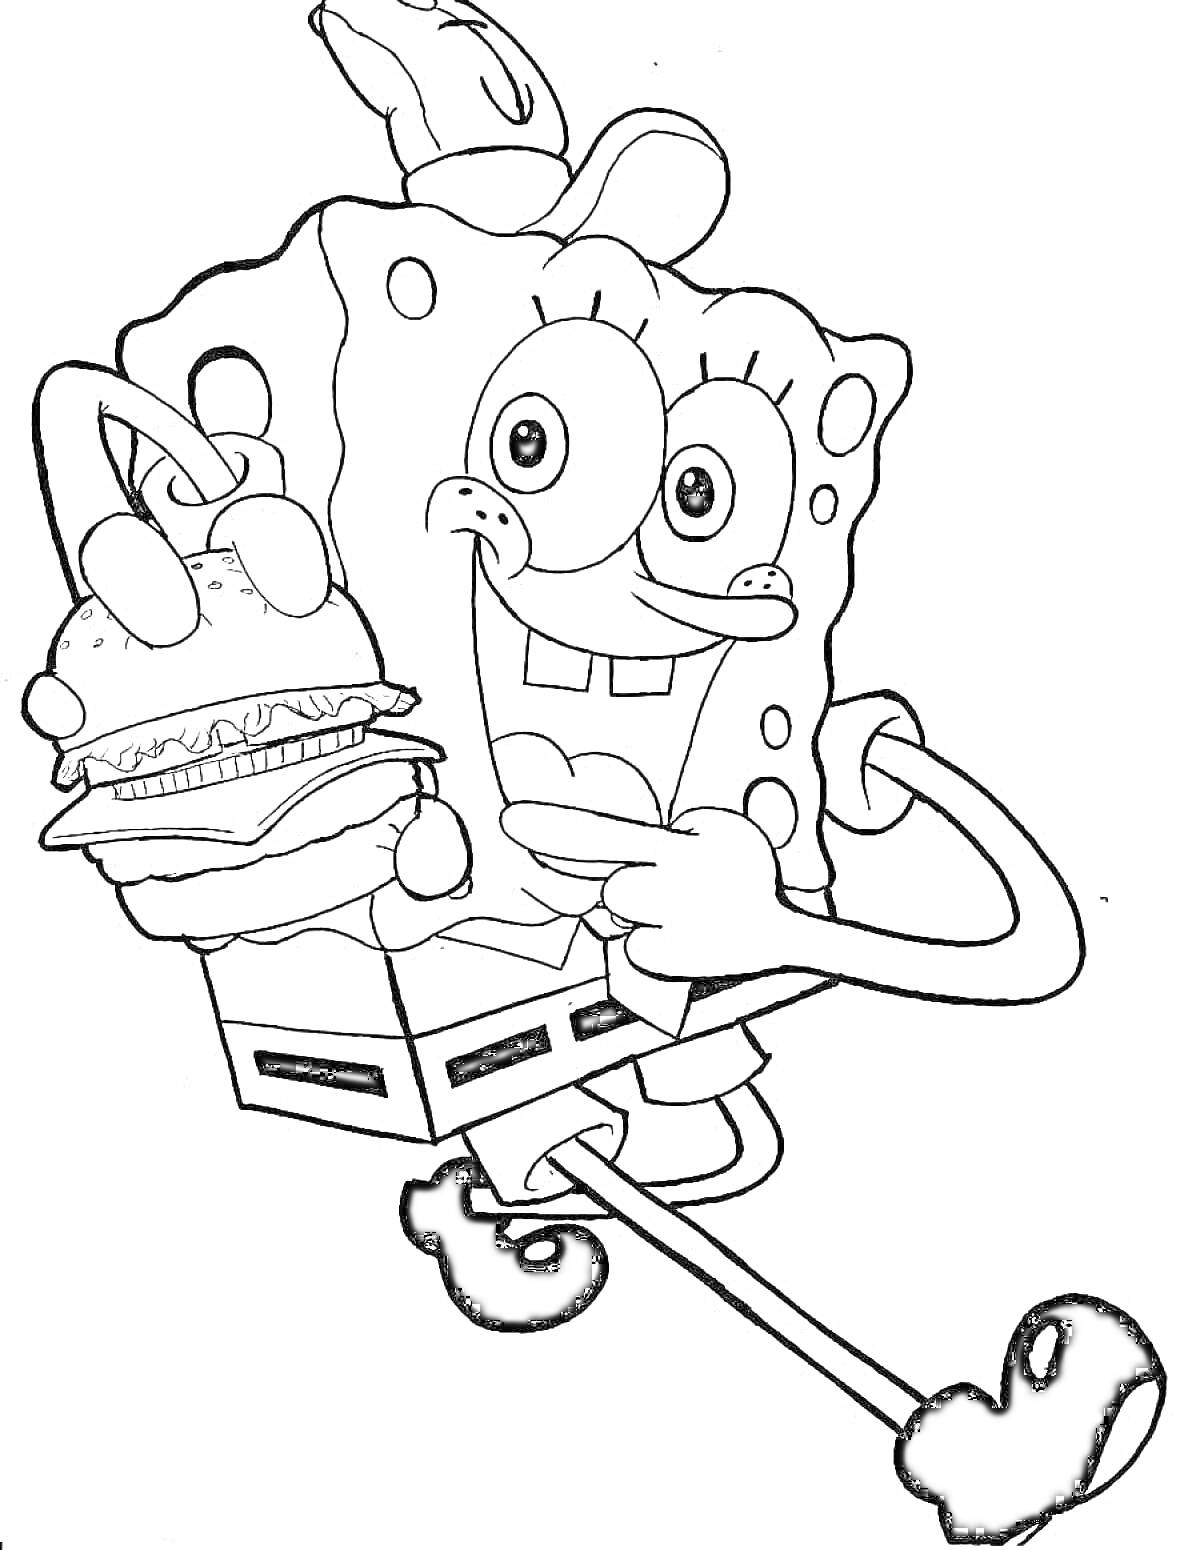 Раскраска Губка Боб несёт бургер, радостное выражение лица, поднятая нога